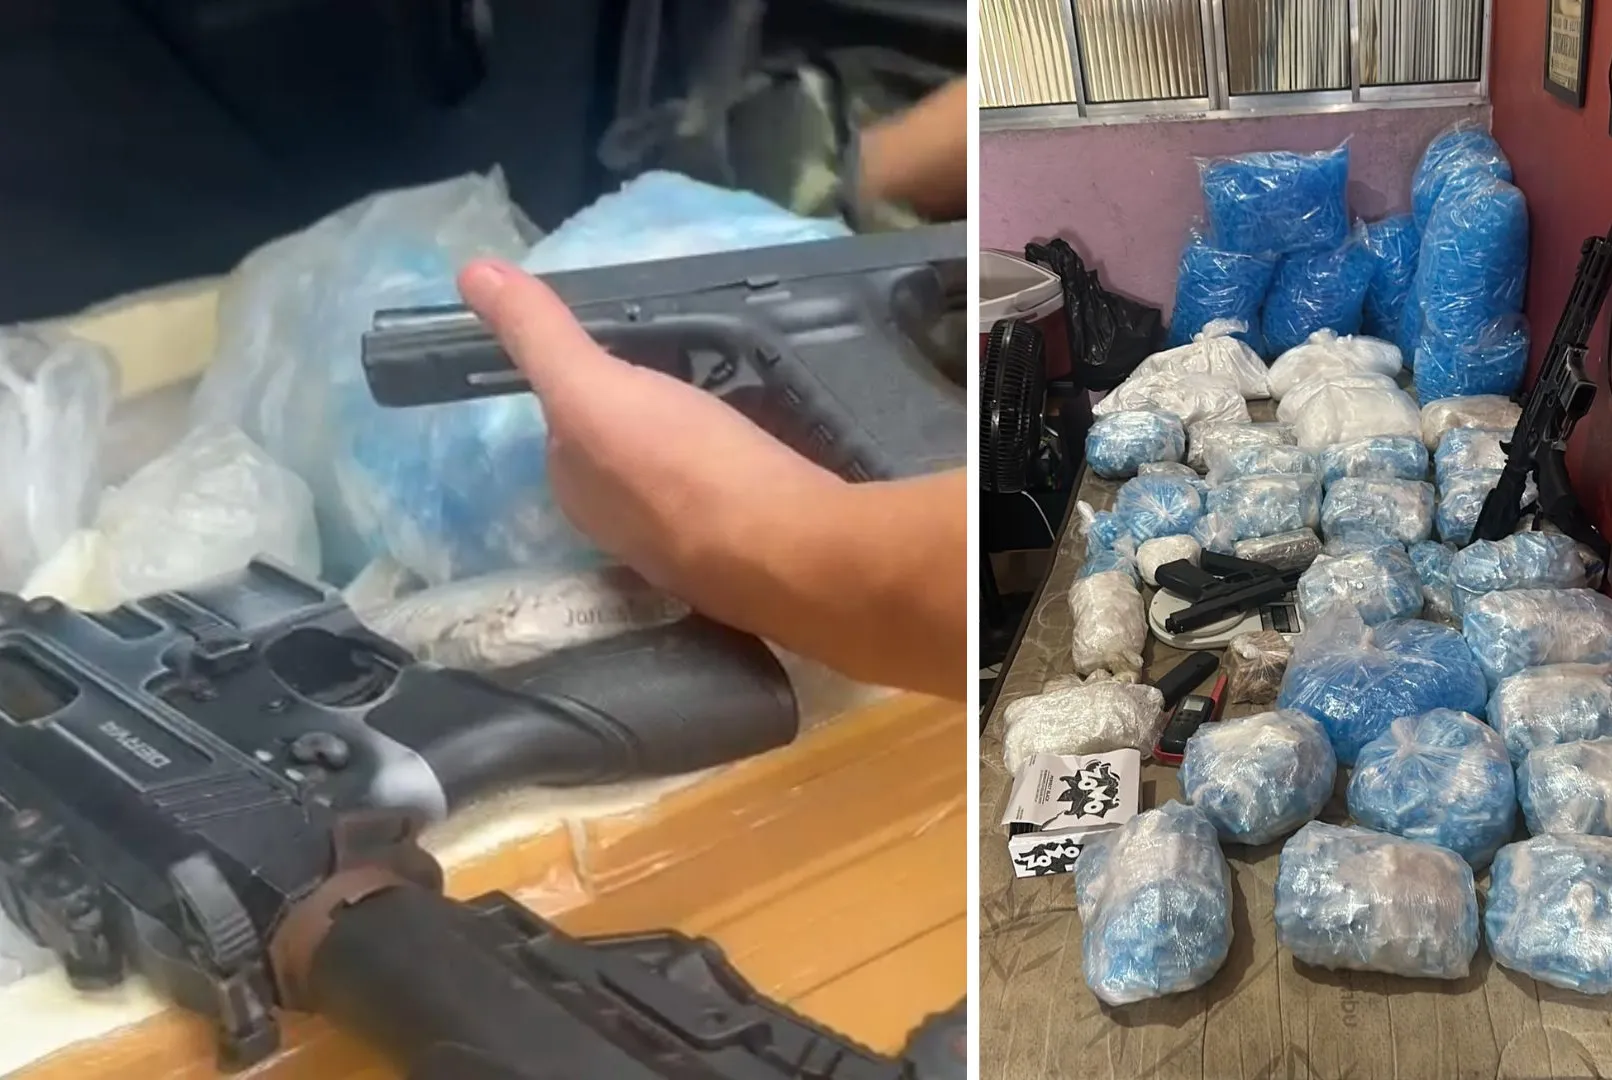 Armas e drogas foram apreendidas durante a Operação Impacto realizada em Guarujá